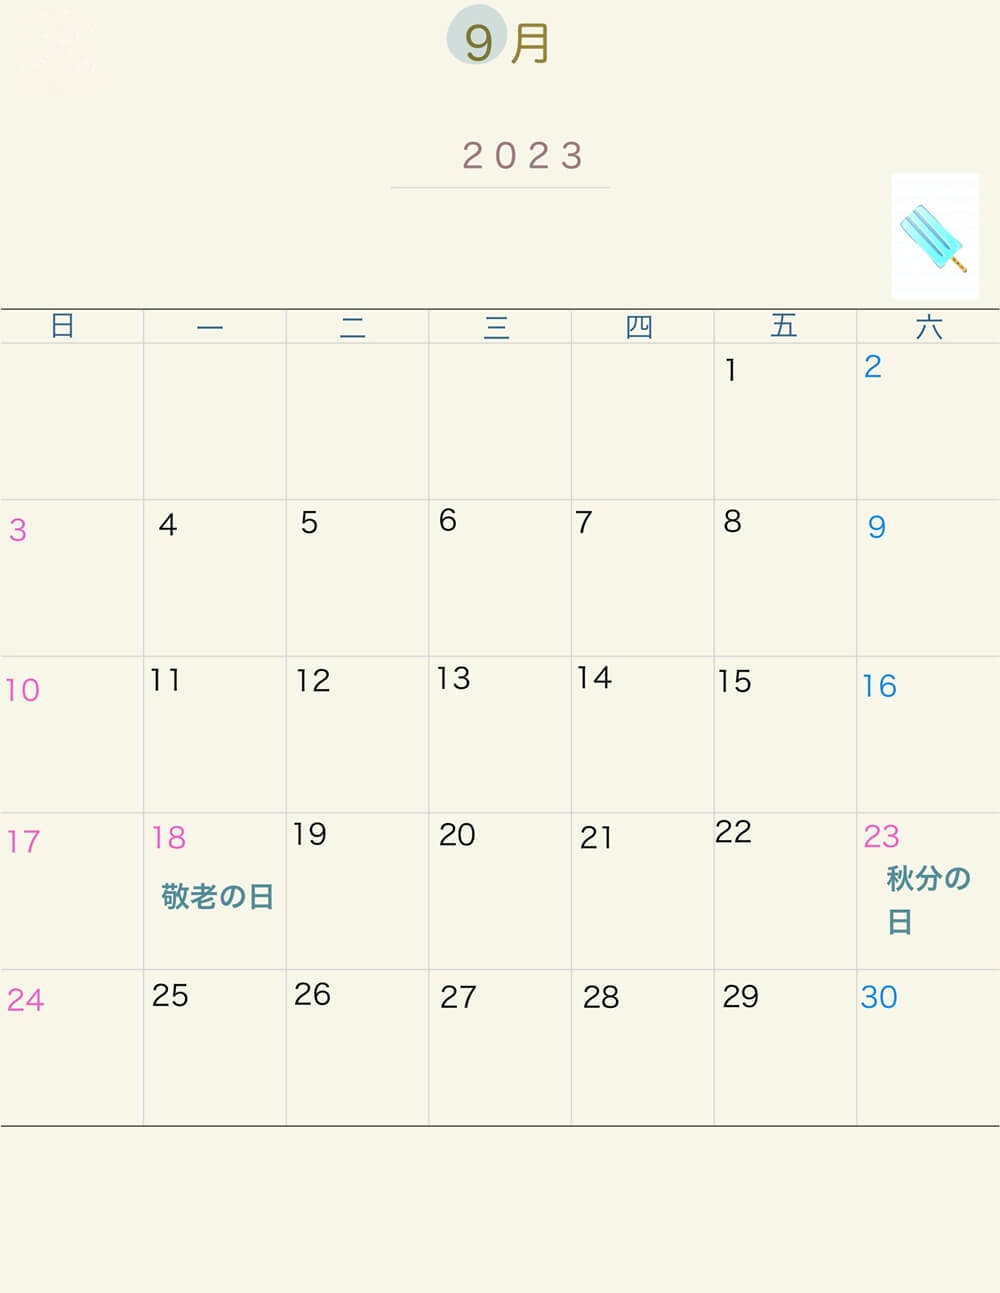 2023 日本行事曆